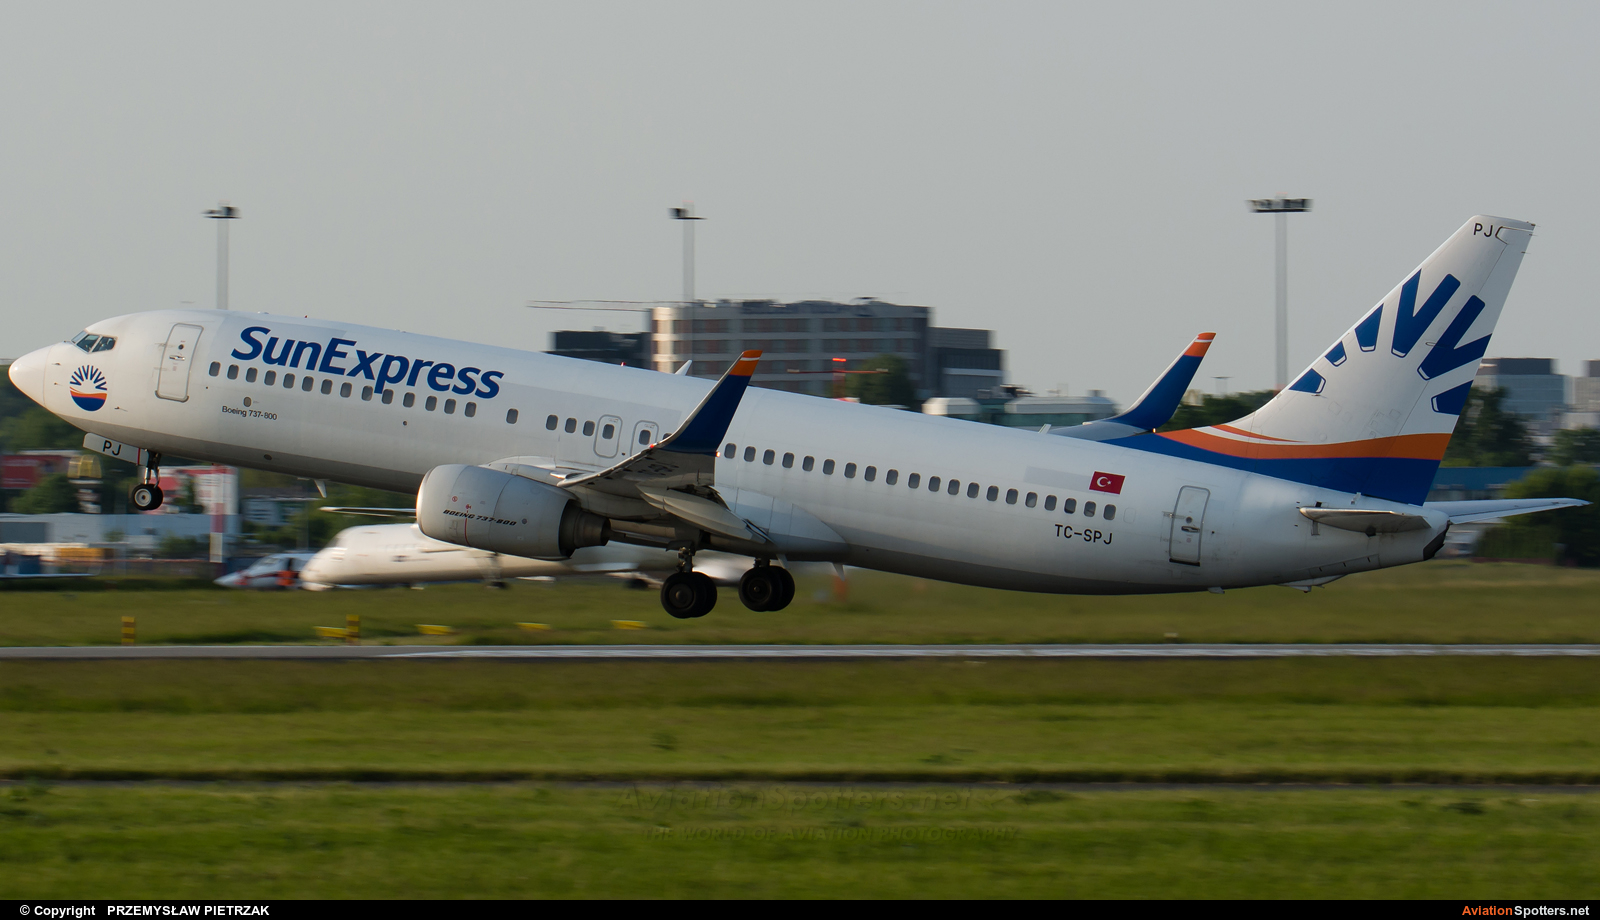 SunExpress  -  737-800  (TC-SPJ) By PRZEMYSŁAW PIETRZAK (PEPE74)